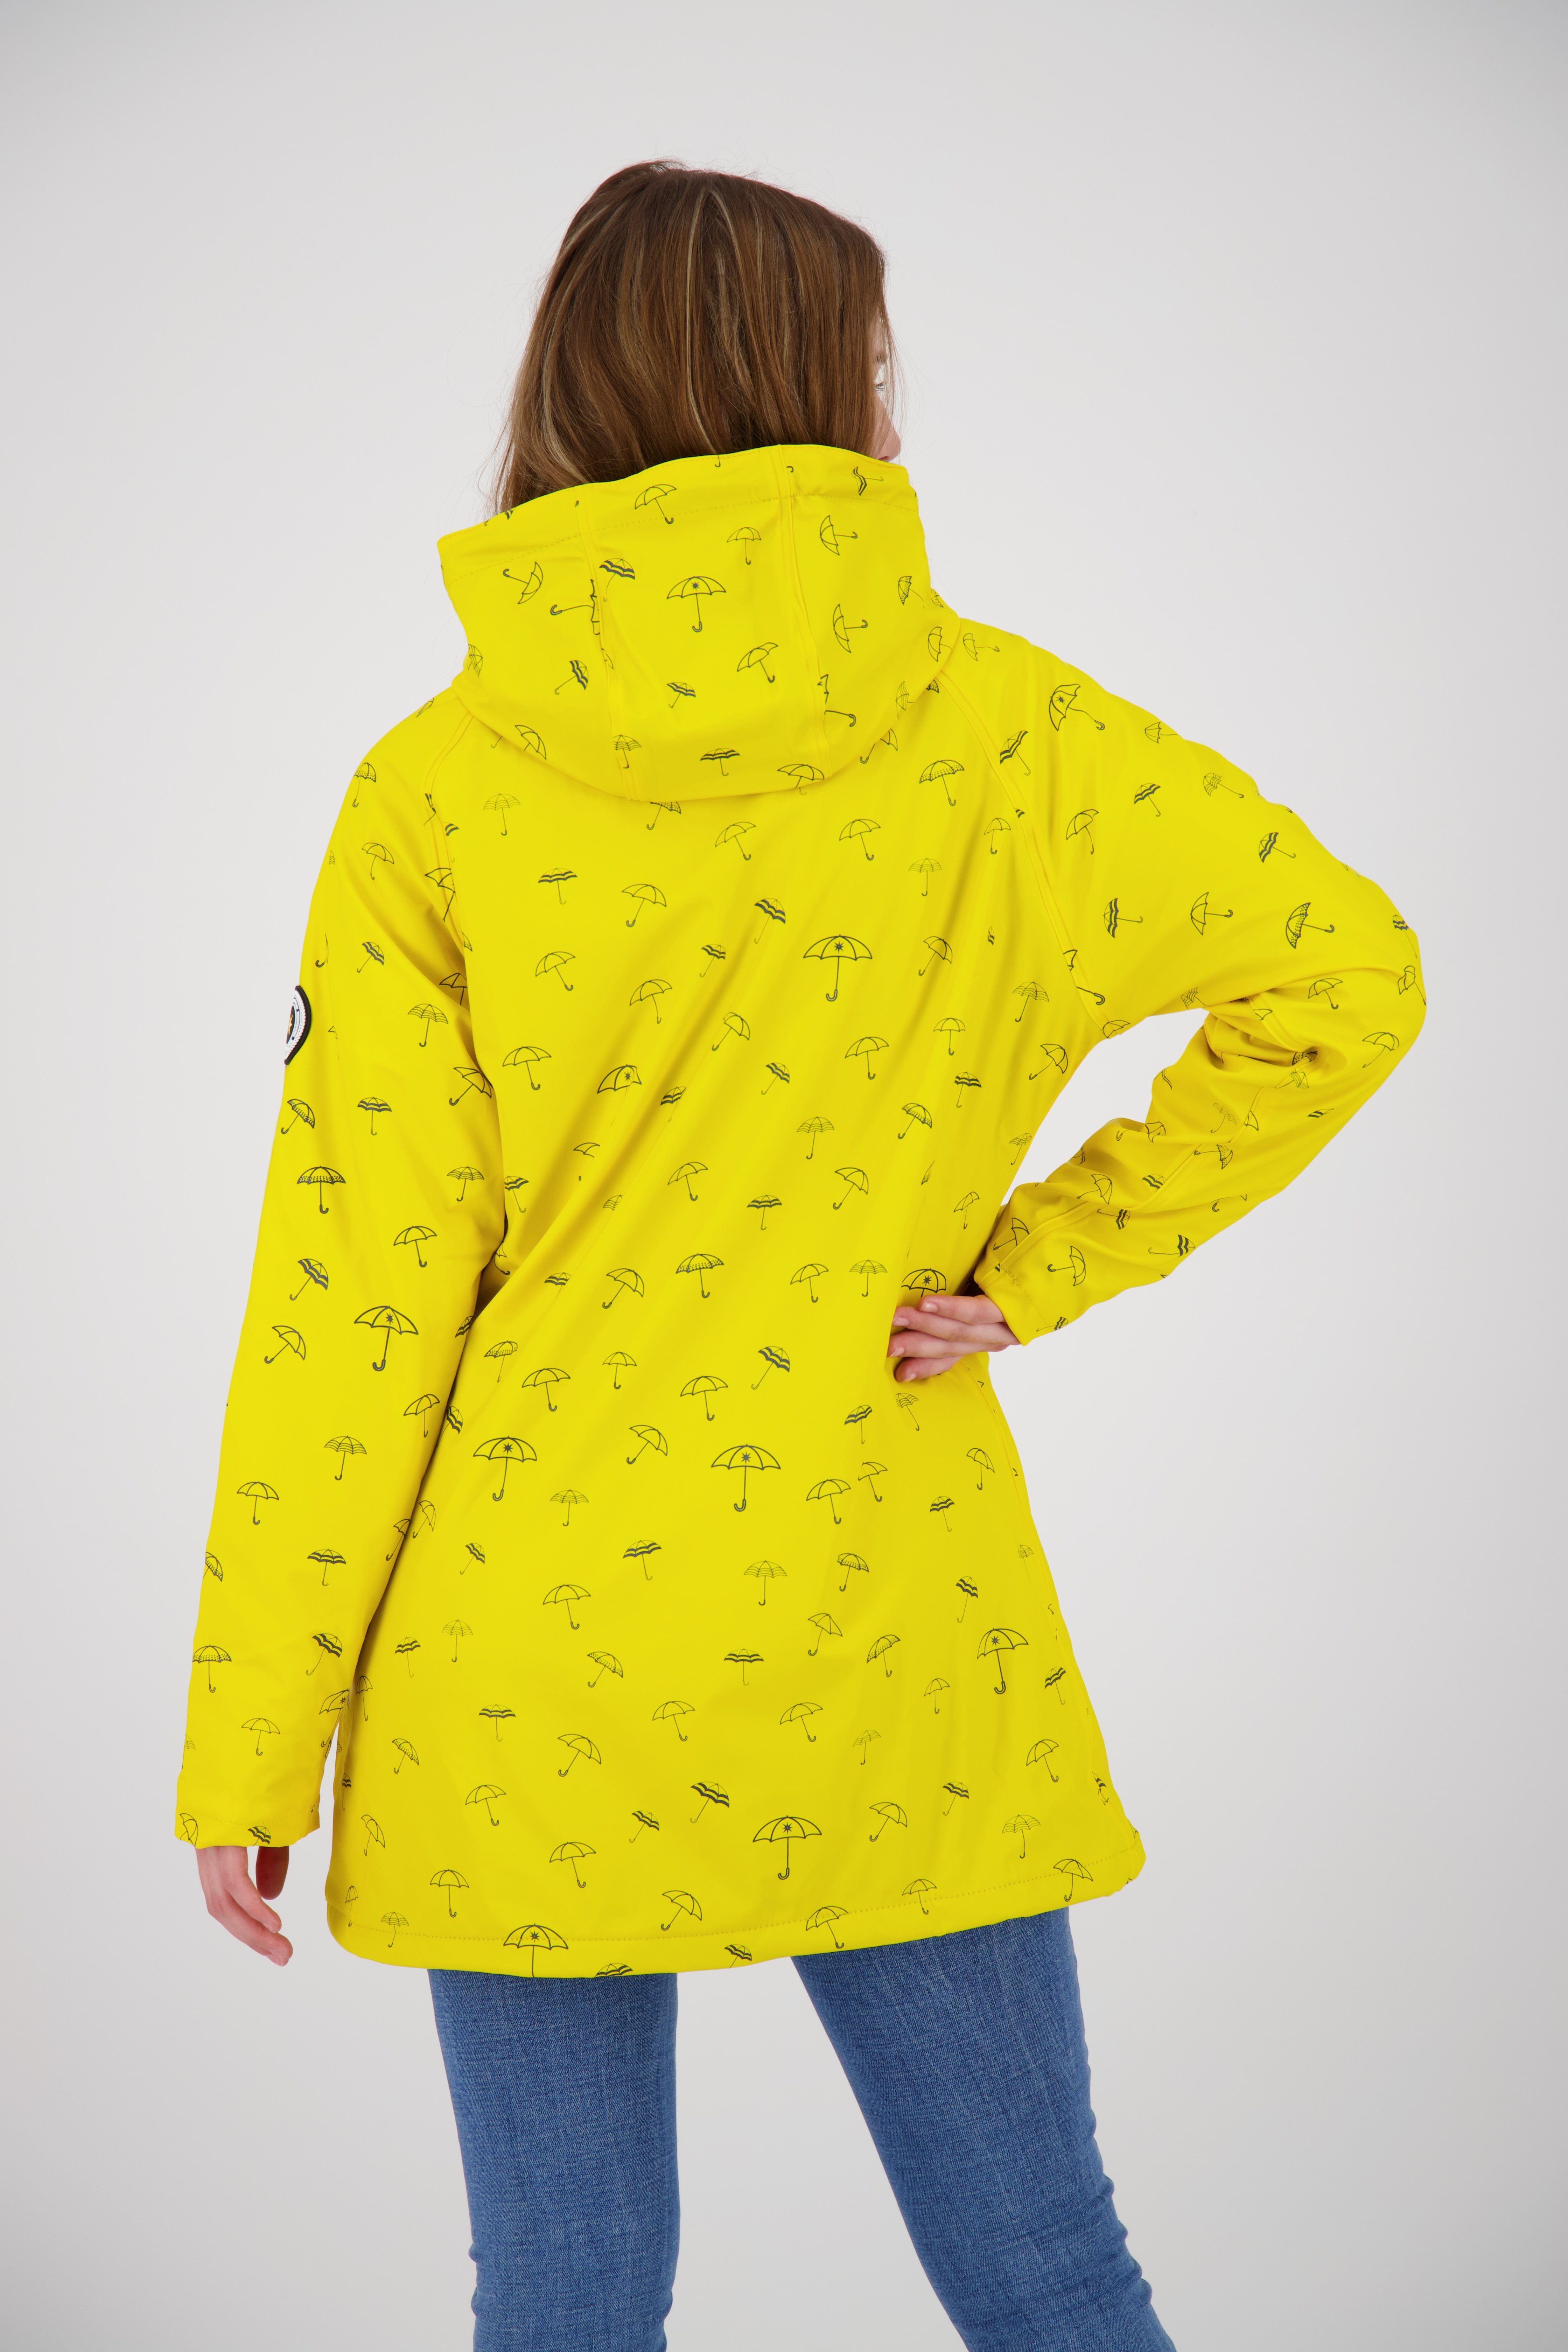 DEPROC Active Regenjacke Friesennerz #ankerglutmeer yellow auch Großen erhältlich in Größen sun CS WOMEN